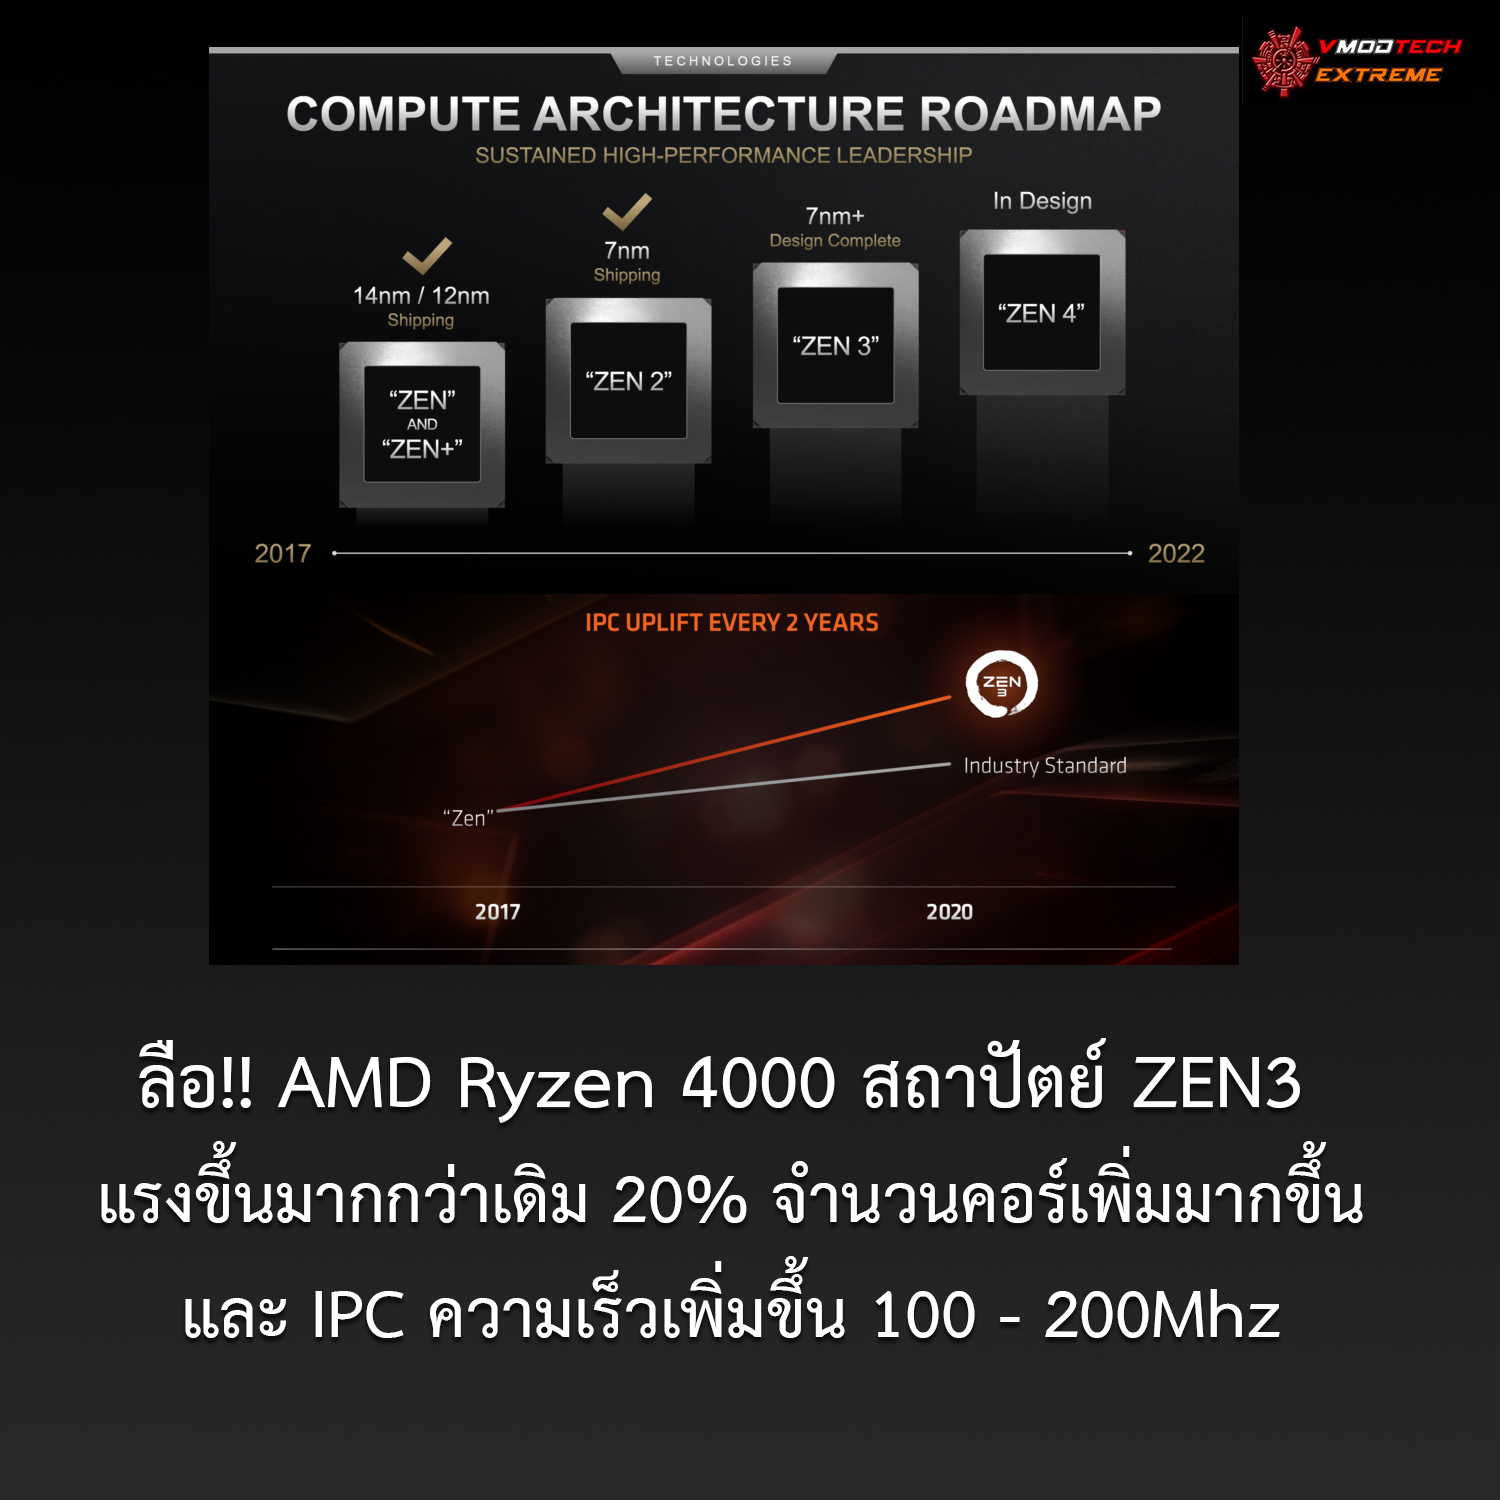 amd ryzen 4000 ลือ!! AMD Ryzen 4000 สถาปัตย์ ZEN3 แรงขึ้นมากกว่าเดิม 20% จำนวนคอร์เพิ่มมากขึ้น